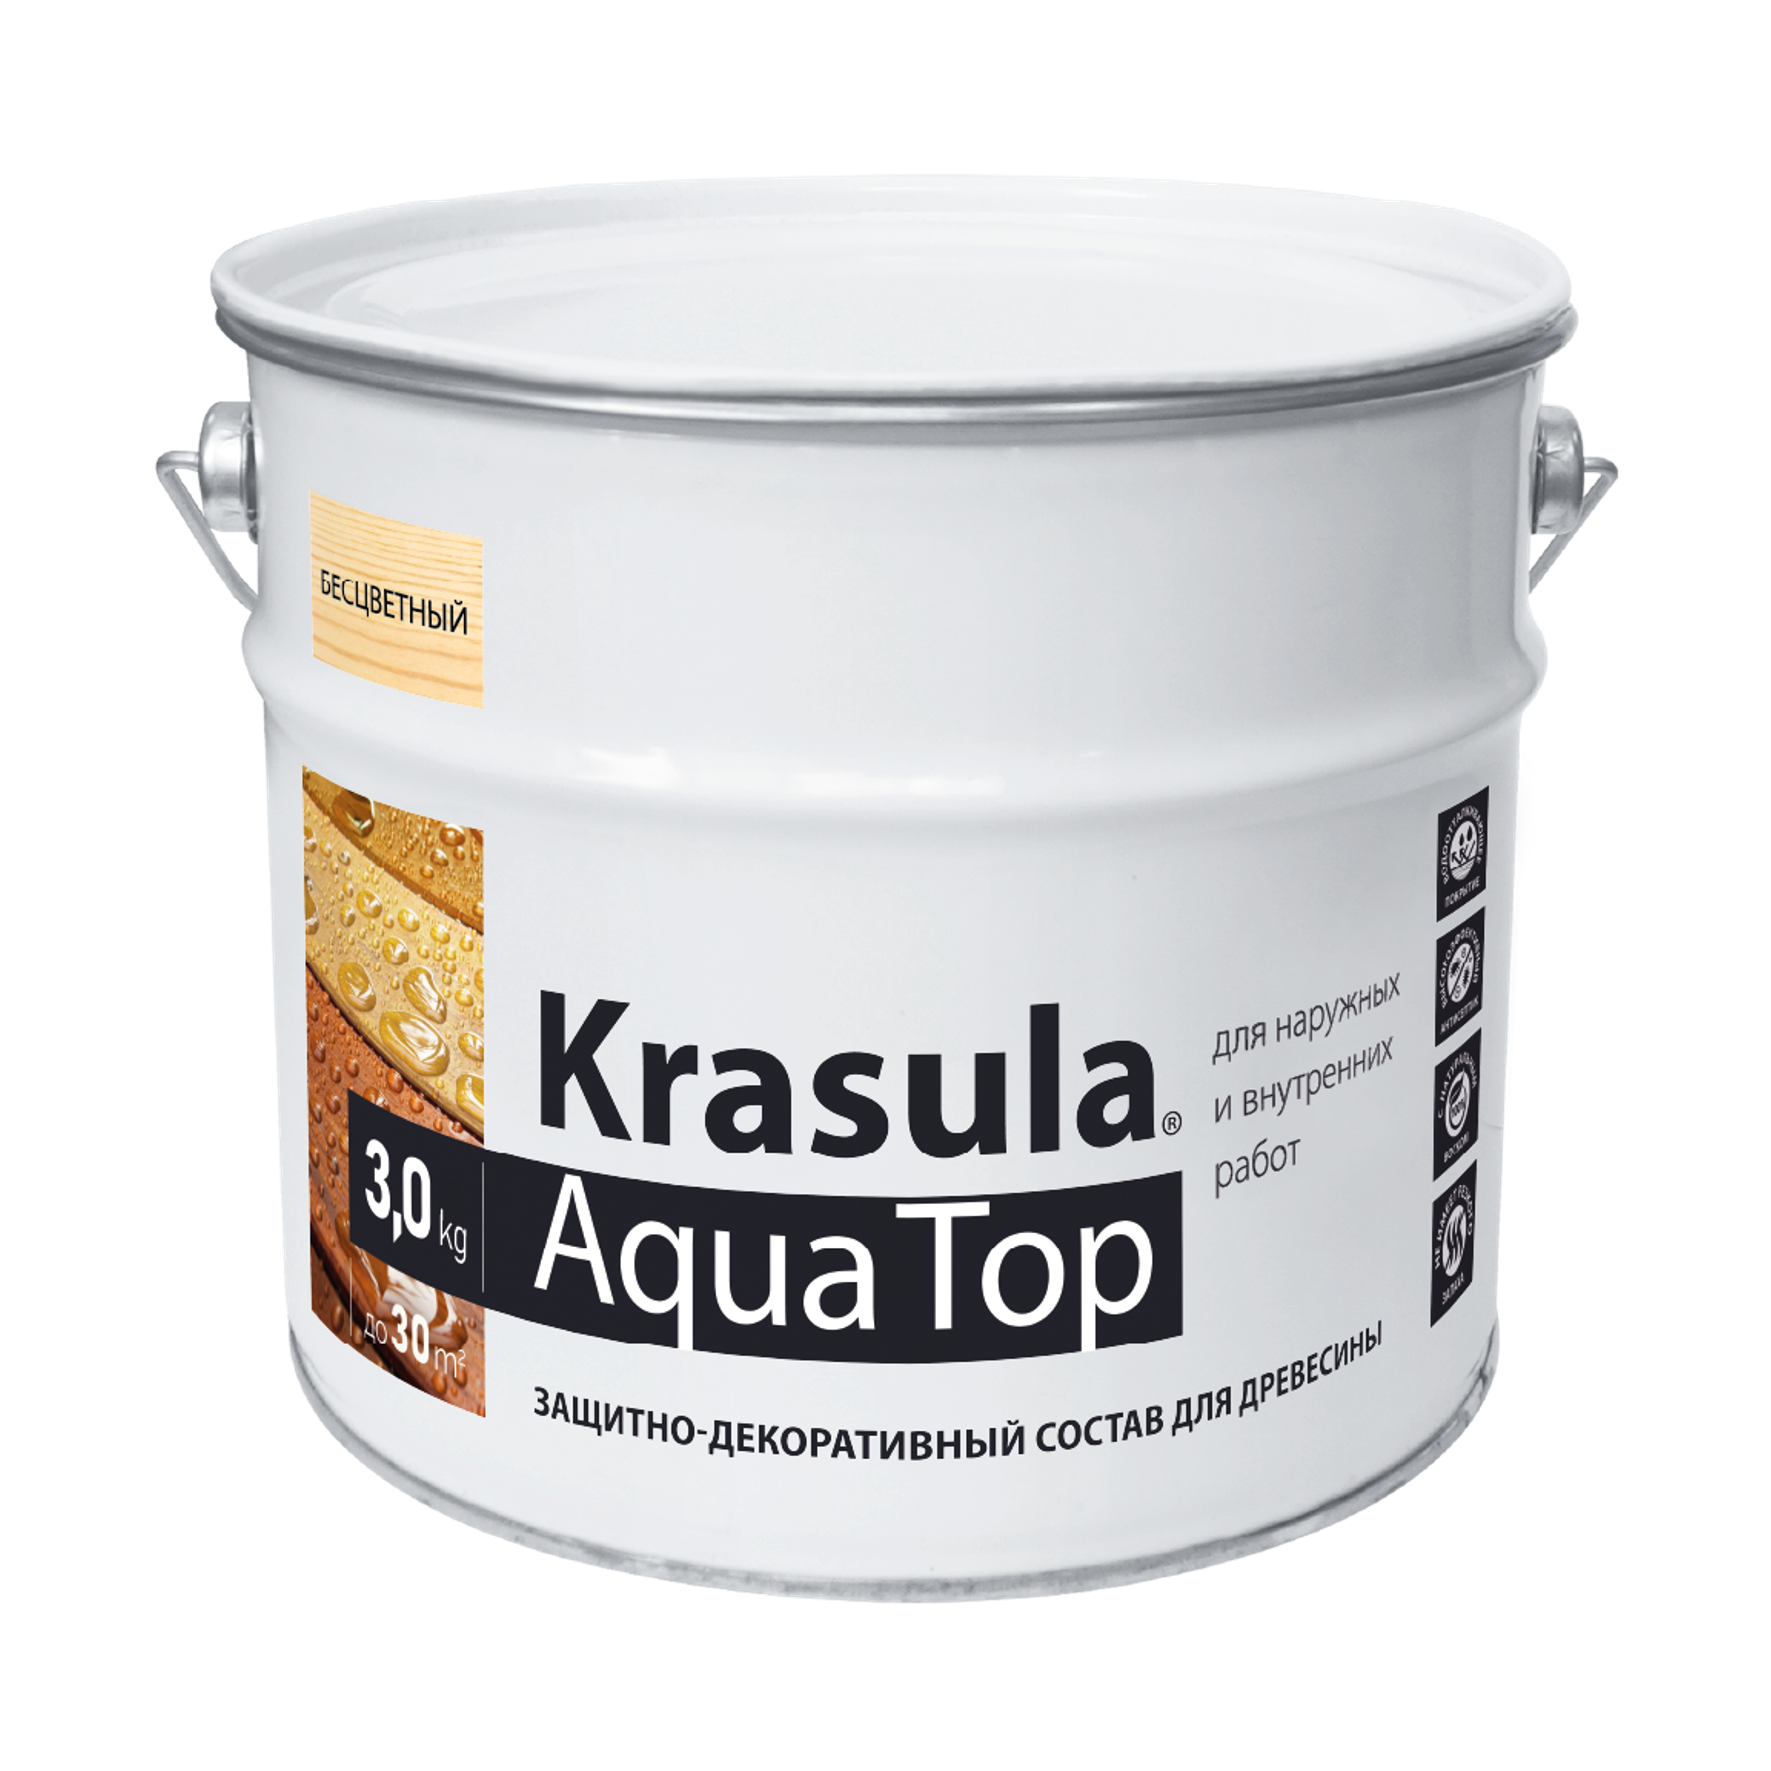 Защитно-декоративный состав для древесины «Krasula» - Aqua Top | 